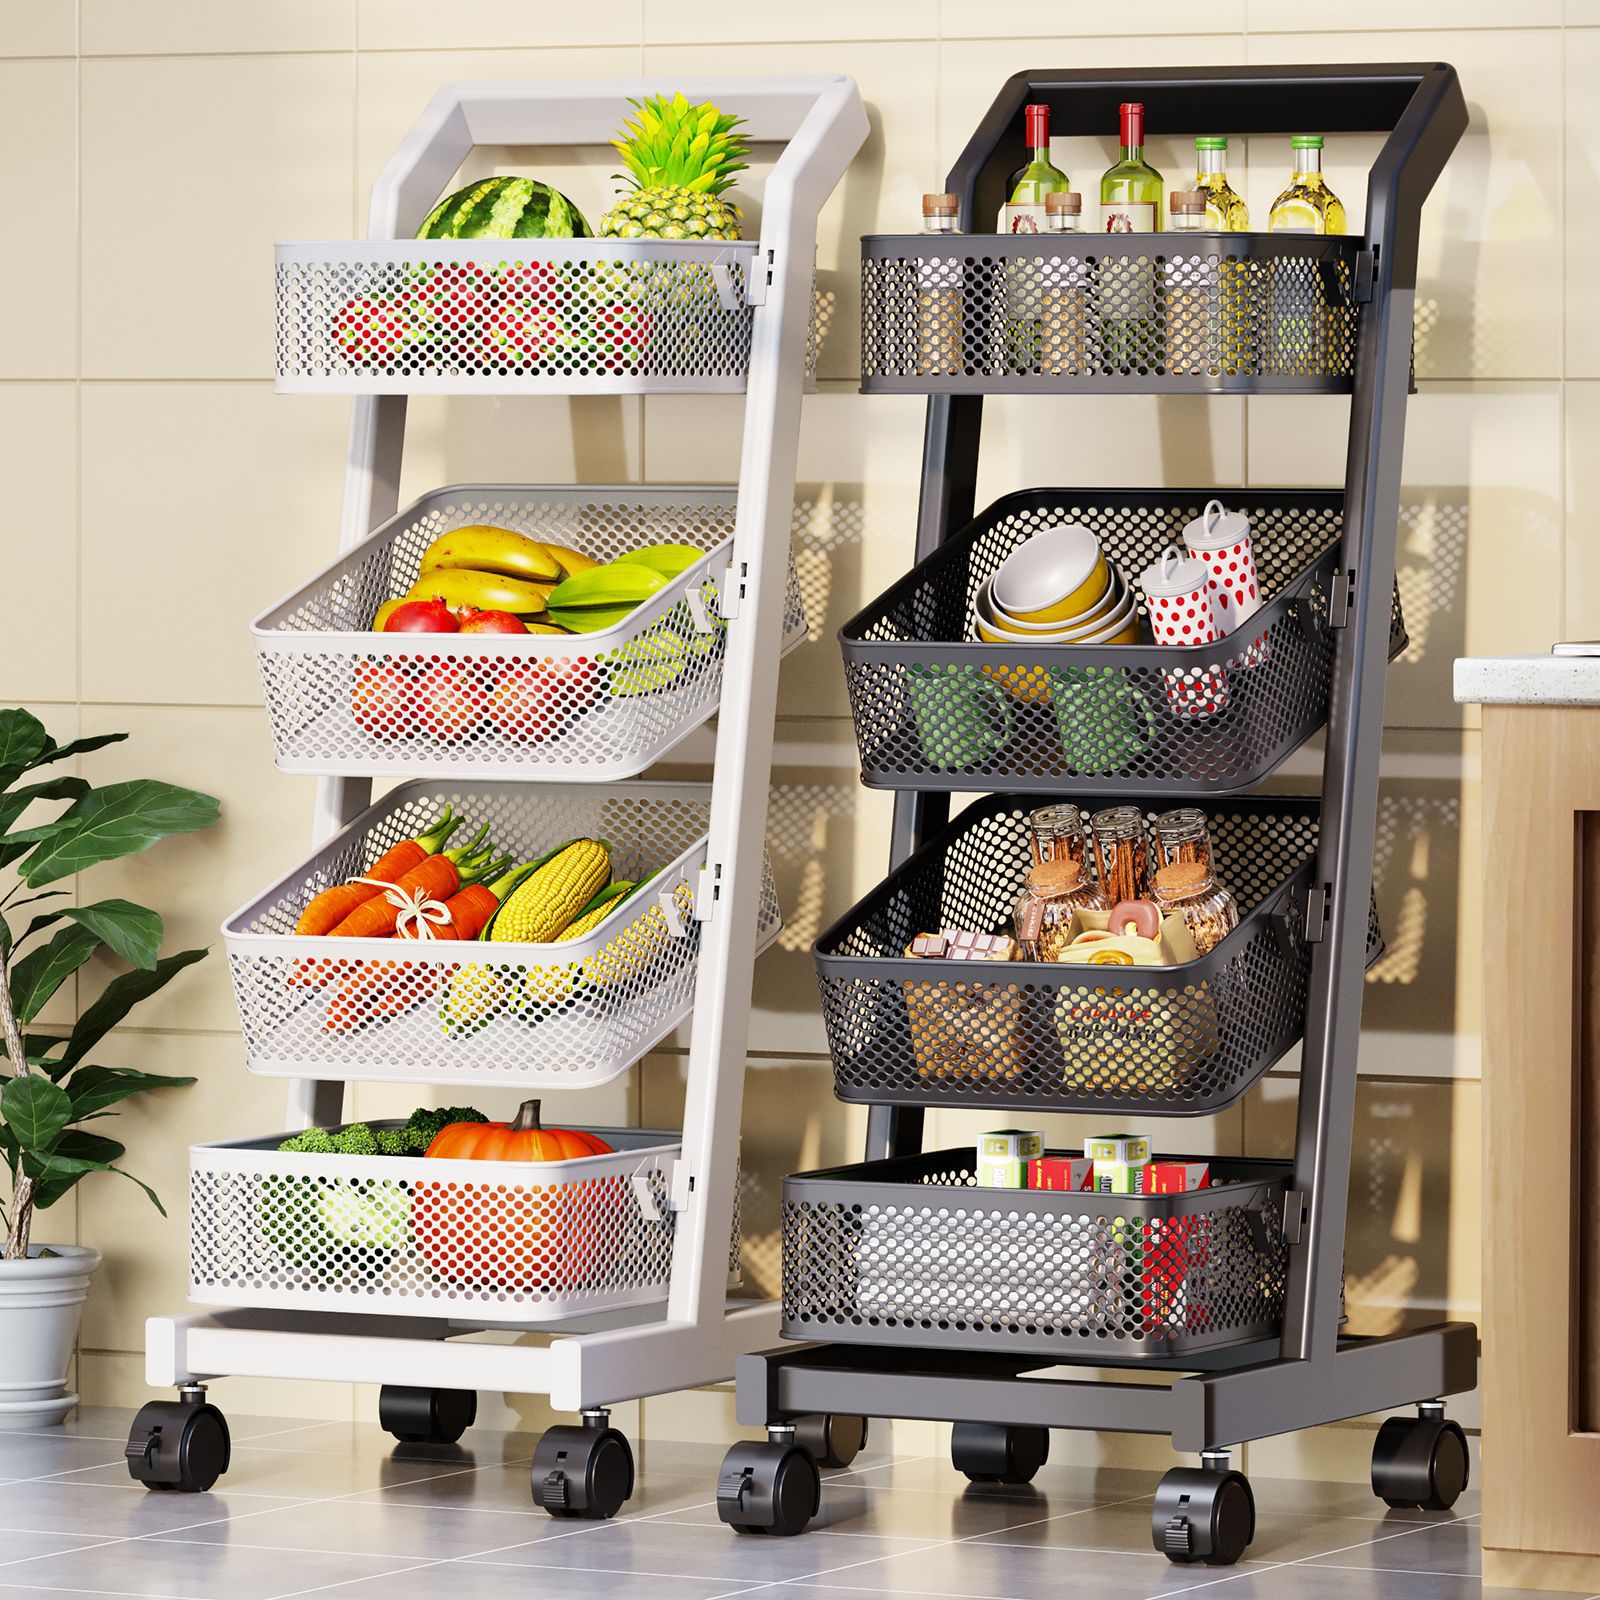 小推车置物架厨房水果蔬菜篮子可移动收纳筐落地家用多层储物架子